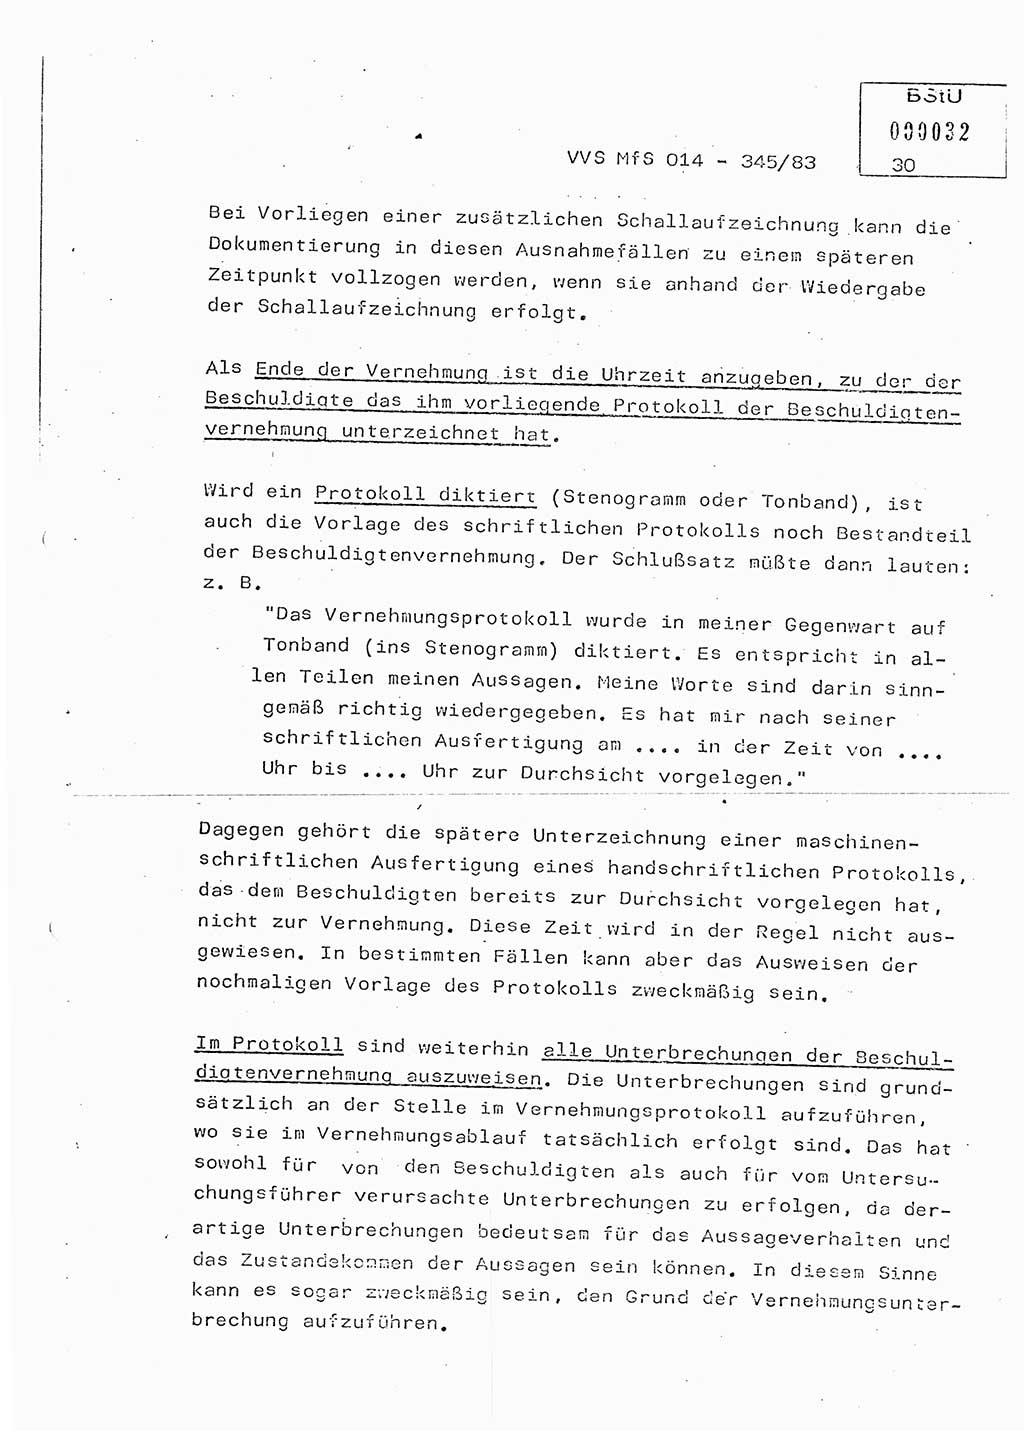 Lektion Ministerium für Staatssicherheit (MfS) [Deutsche Demokratische Republik (DDR)], Hauptabteilung (HA) Ⅸ, Vertrauliche Verschlußsache (VVS) o014-345/83, Berlin 1983, Seite 30 (Lekt. MfS DDR HA Ⅸ VVS o014-345/83 1983, S. 30)